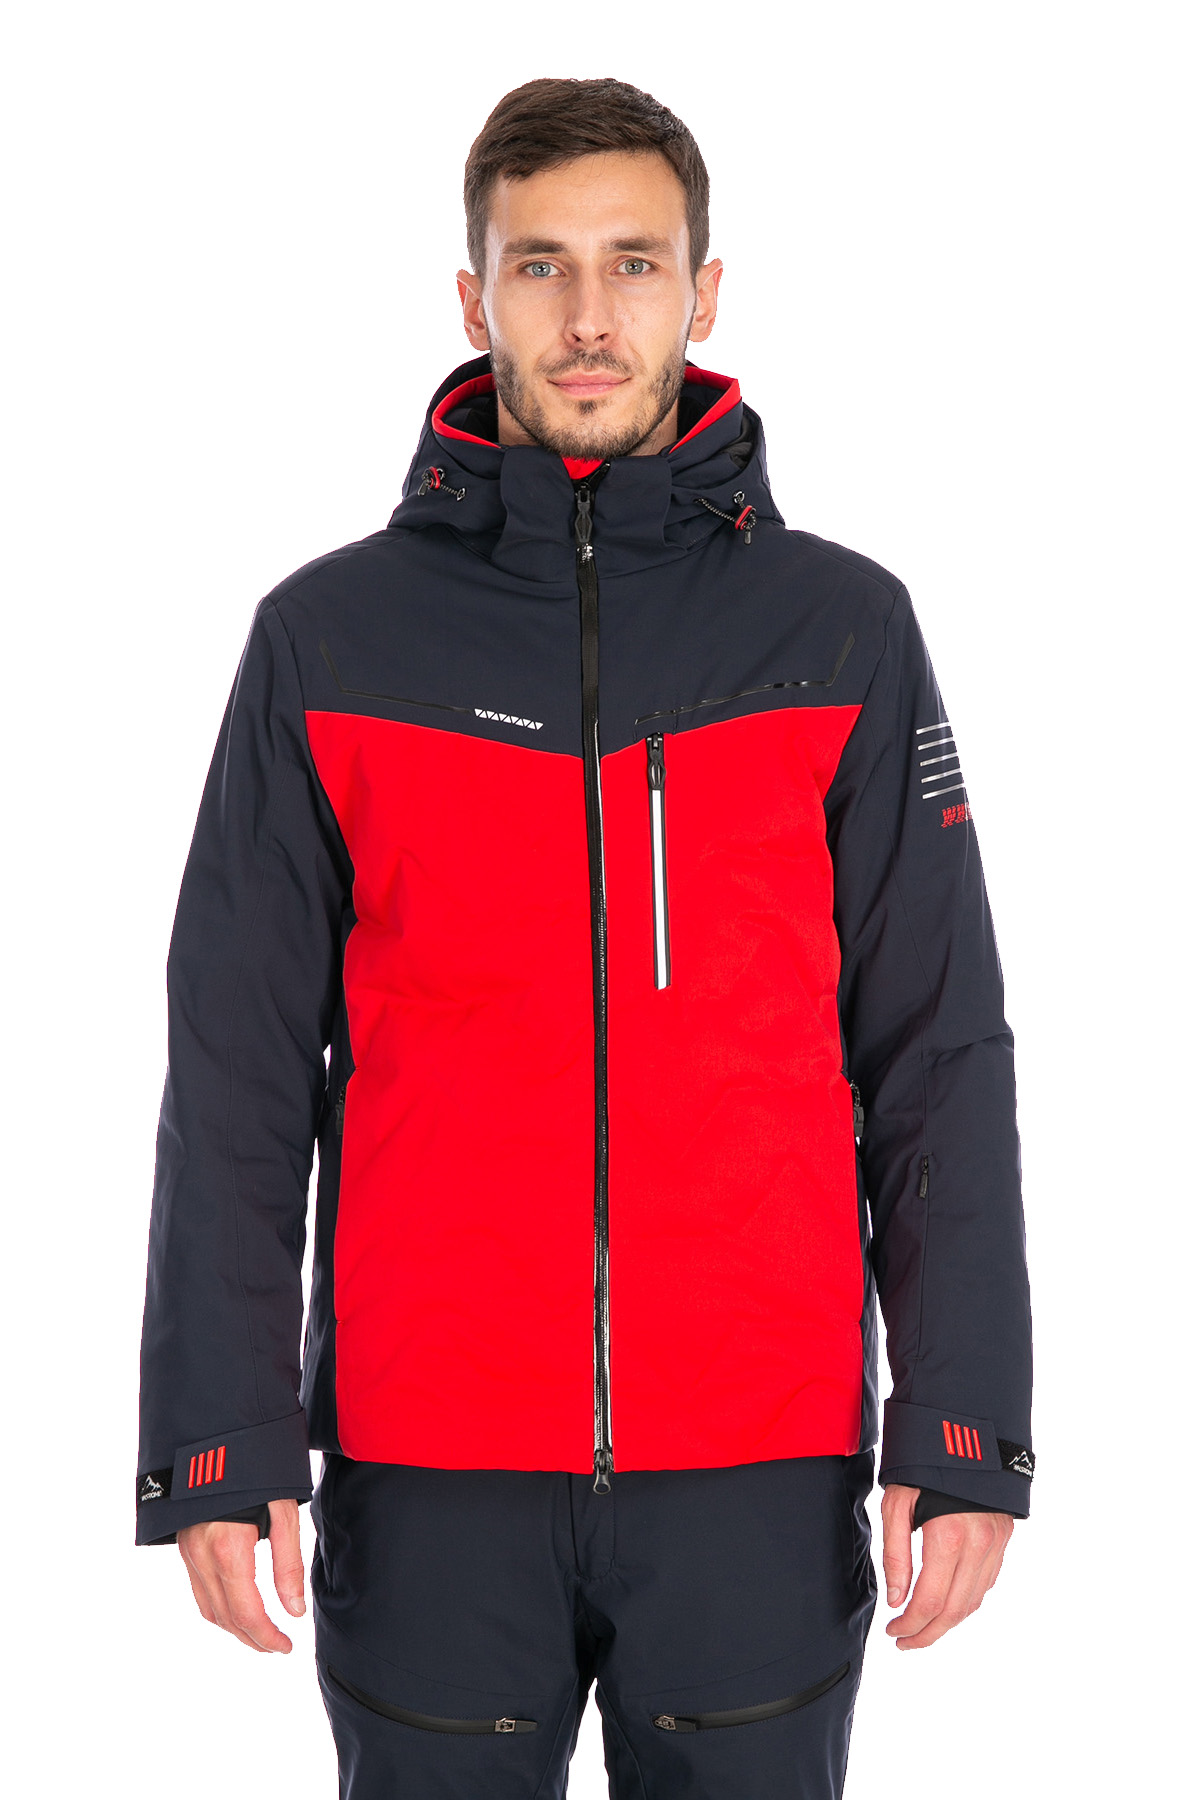 Мужская горнолыжная Куртка WHS Красный, 8783326 (46, s)